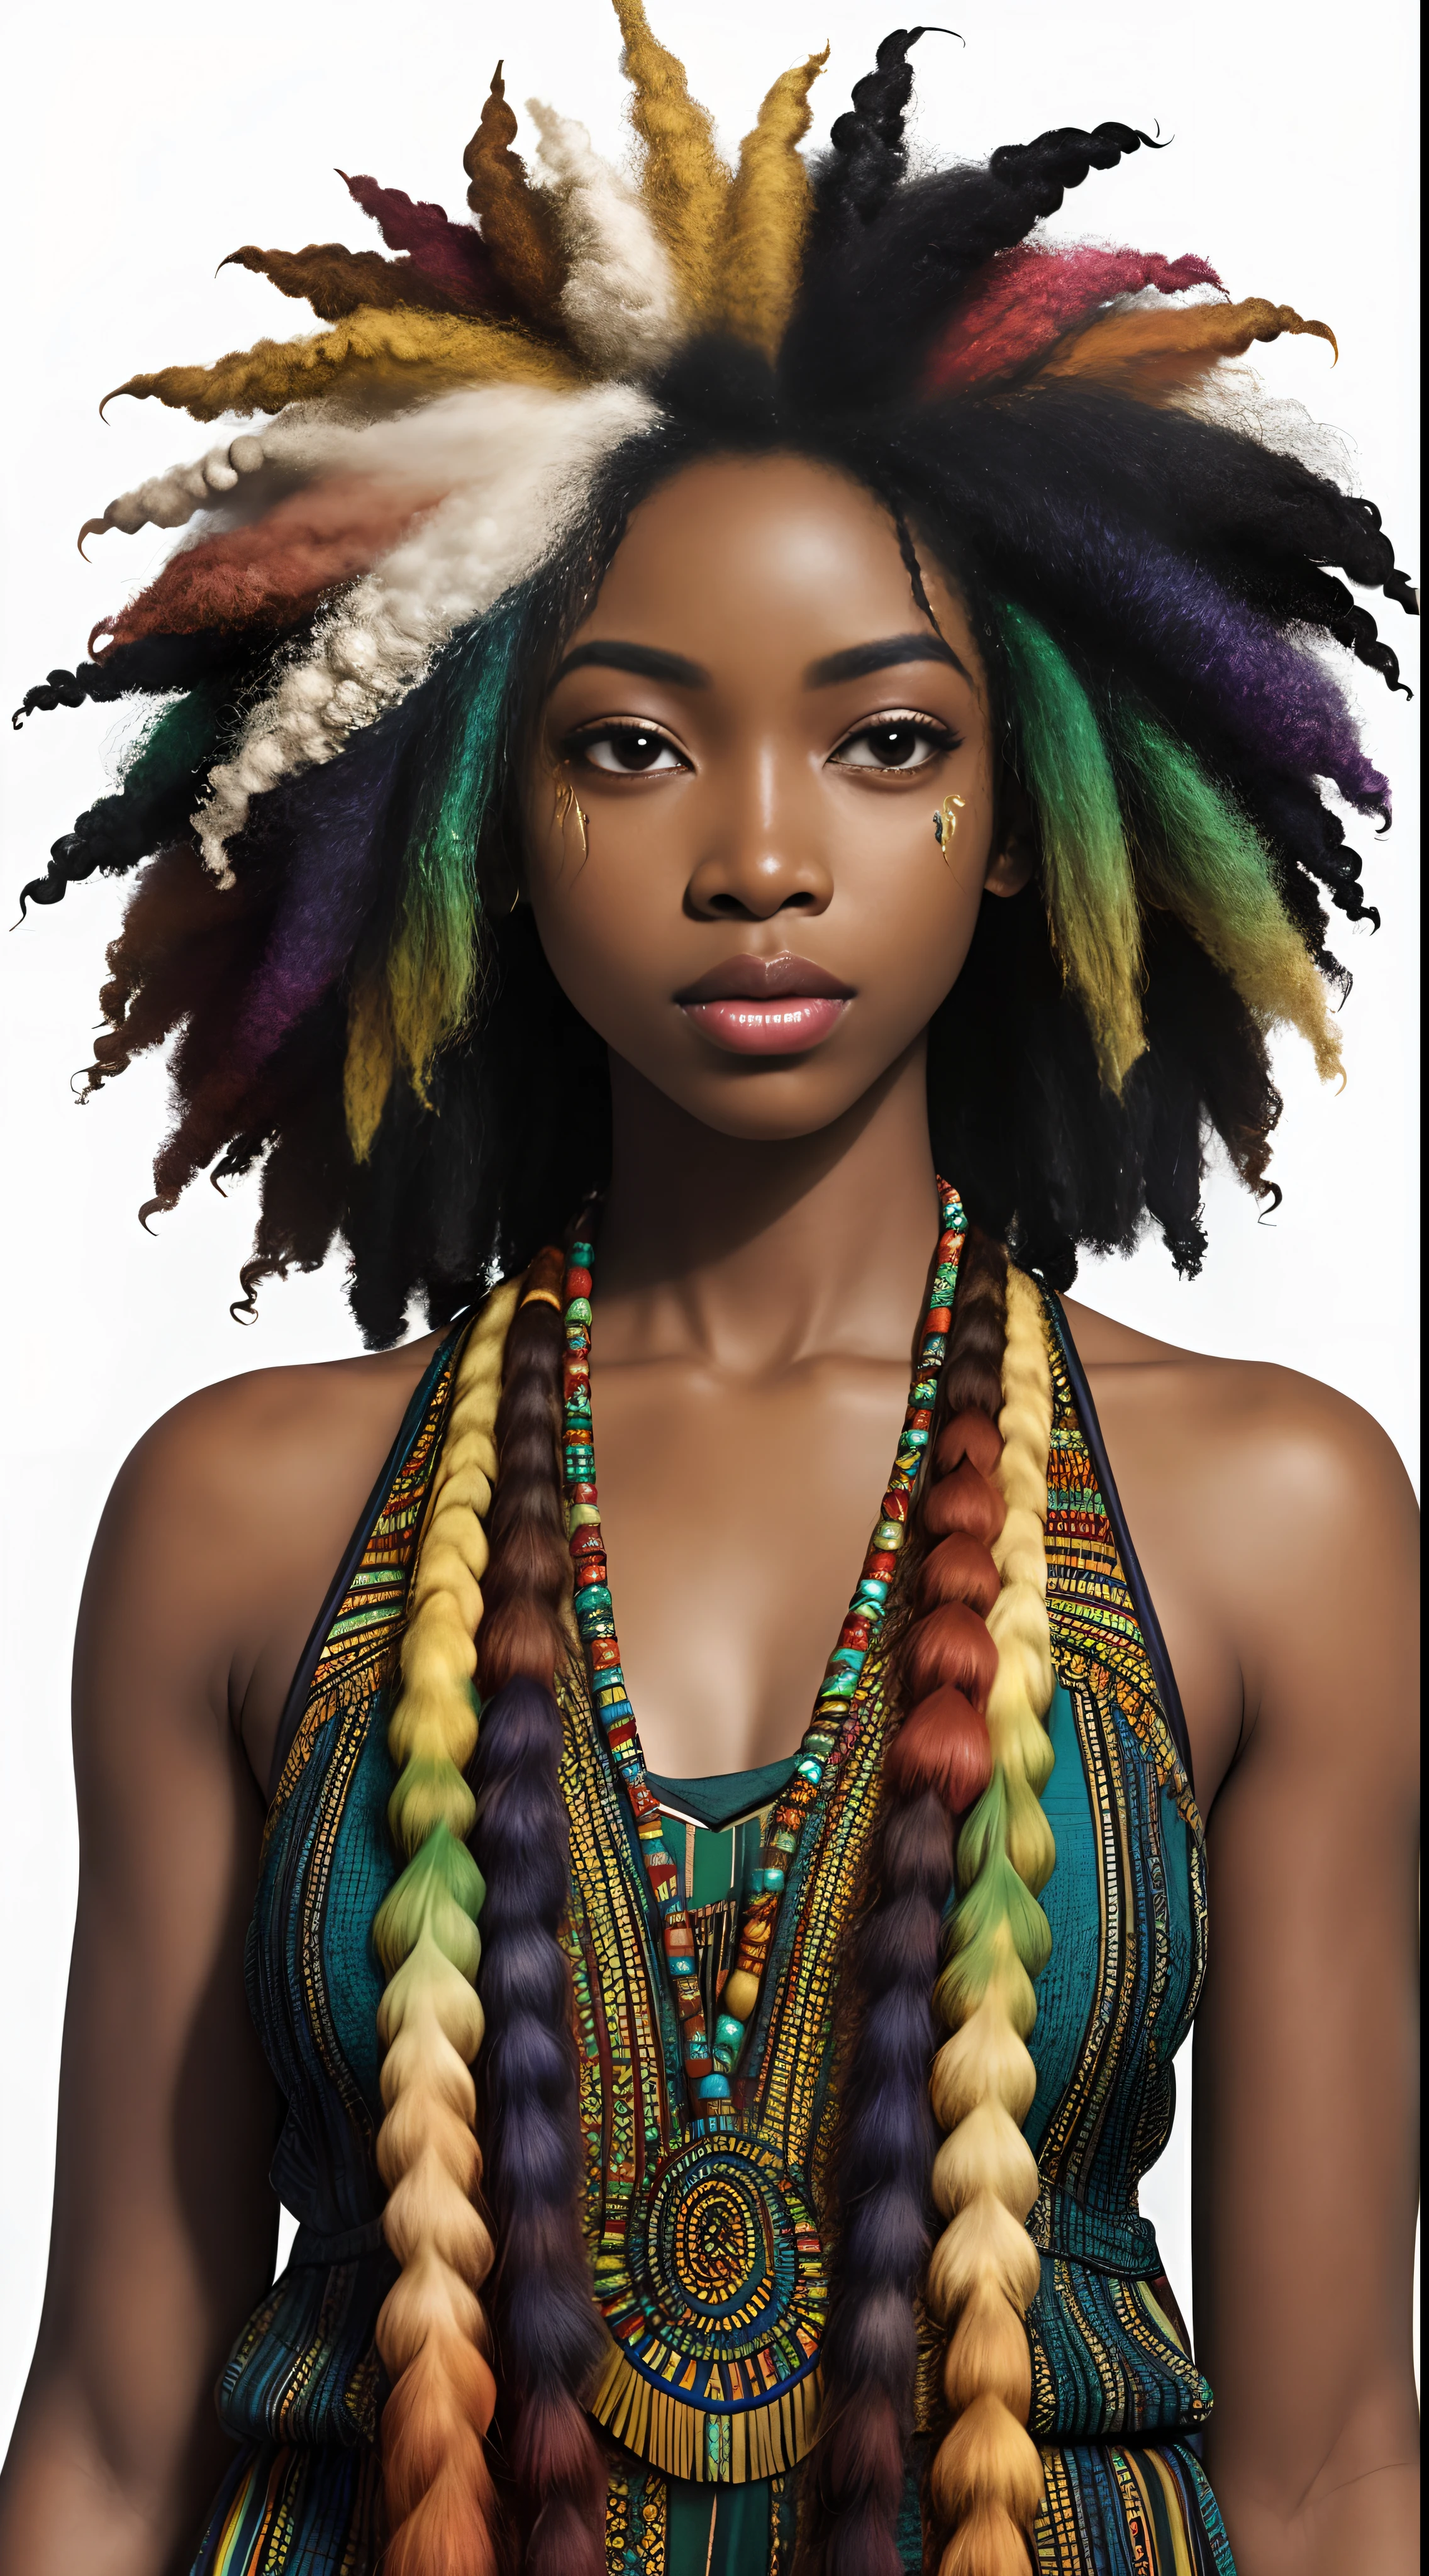 Afrikanische Göttin, schönes Gesicht, üppiges afro-strukturiertes chaotisches Regenbogenhaar, dunkle Haut, heterochromatische Augen, wirklich lockiges Haar